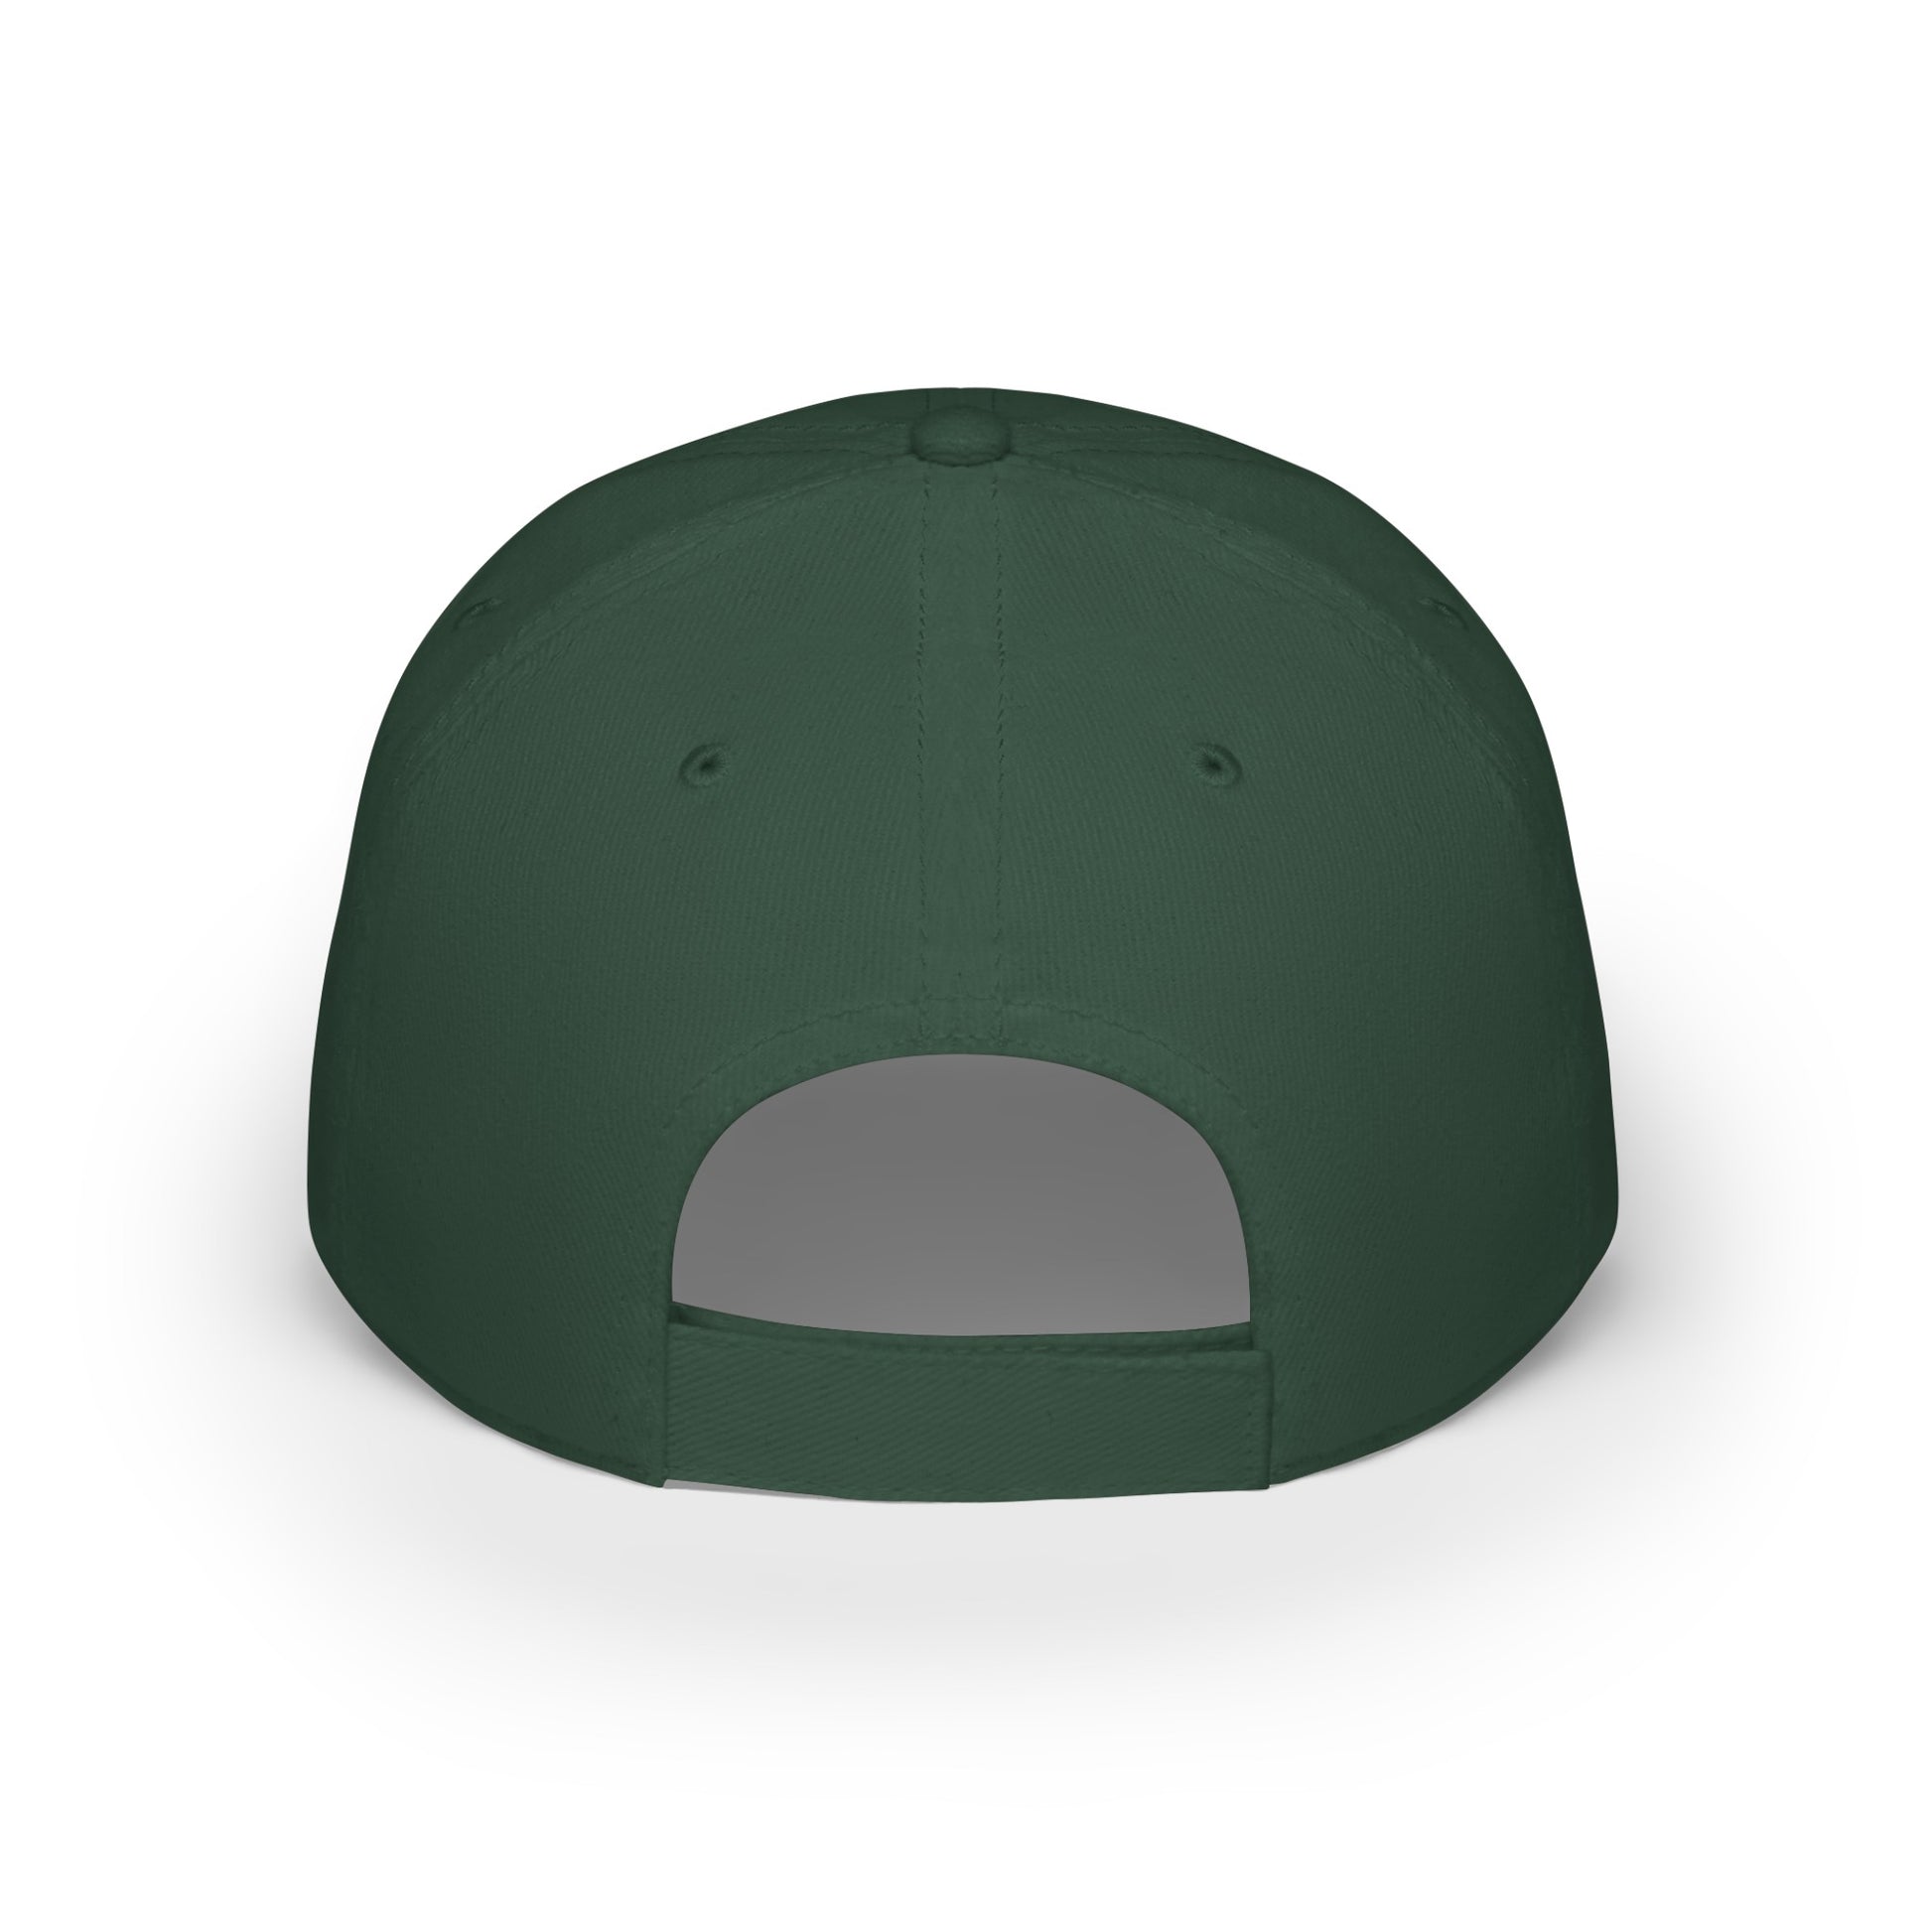 MDBTDJ#SBGC - Low Profile Baseball Cap Tattooed Dj's Limited Edition, Hats, Tattooed Djs Shop